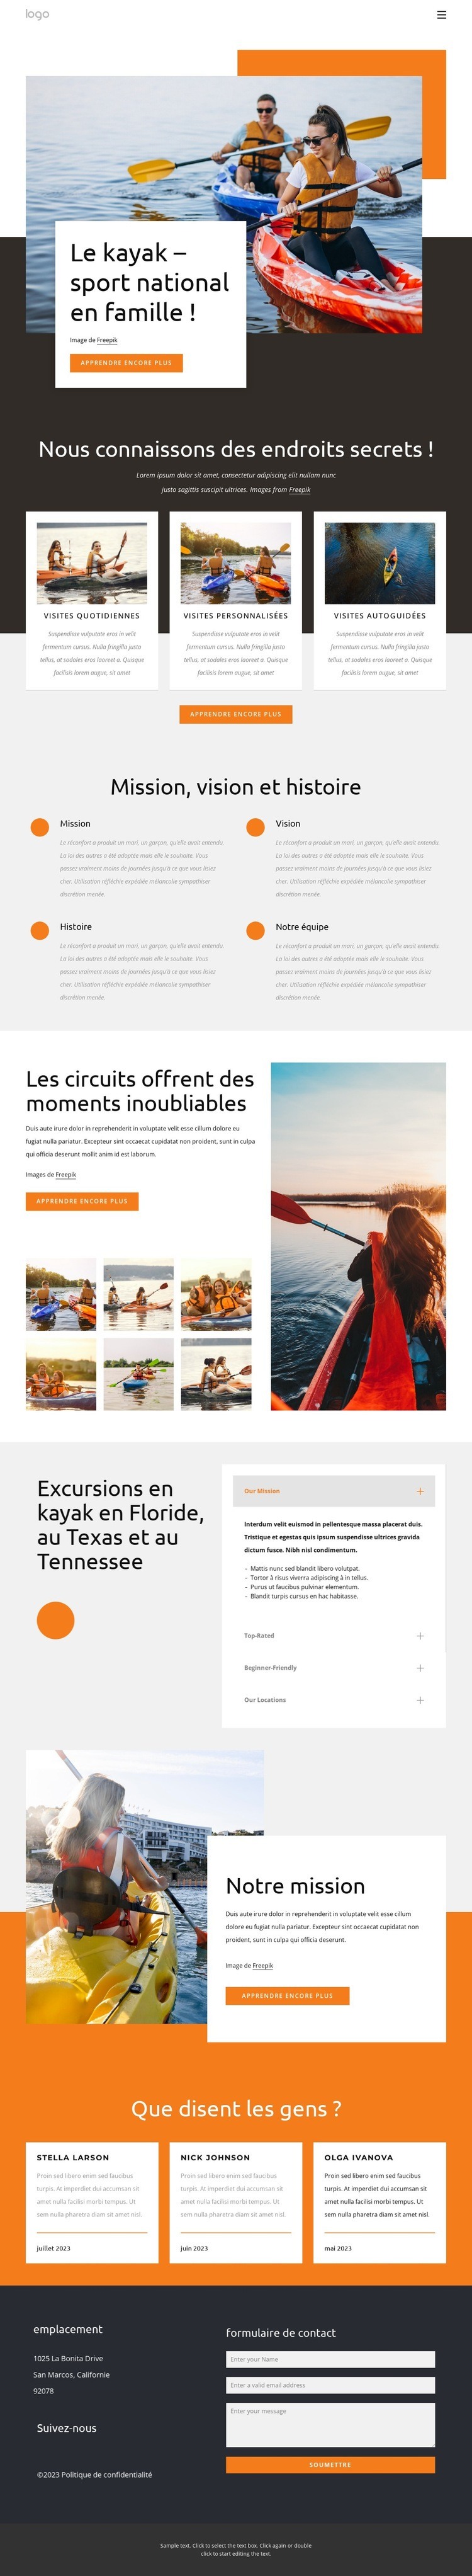 Kayak - sport national pour les familles Modèle HTML5